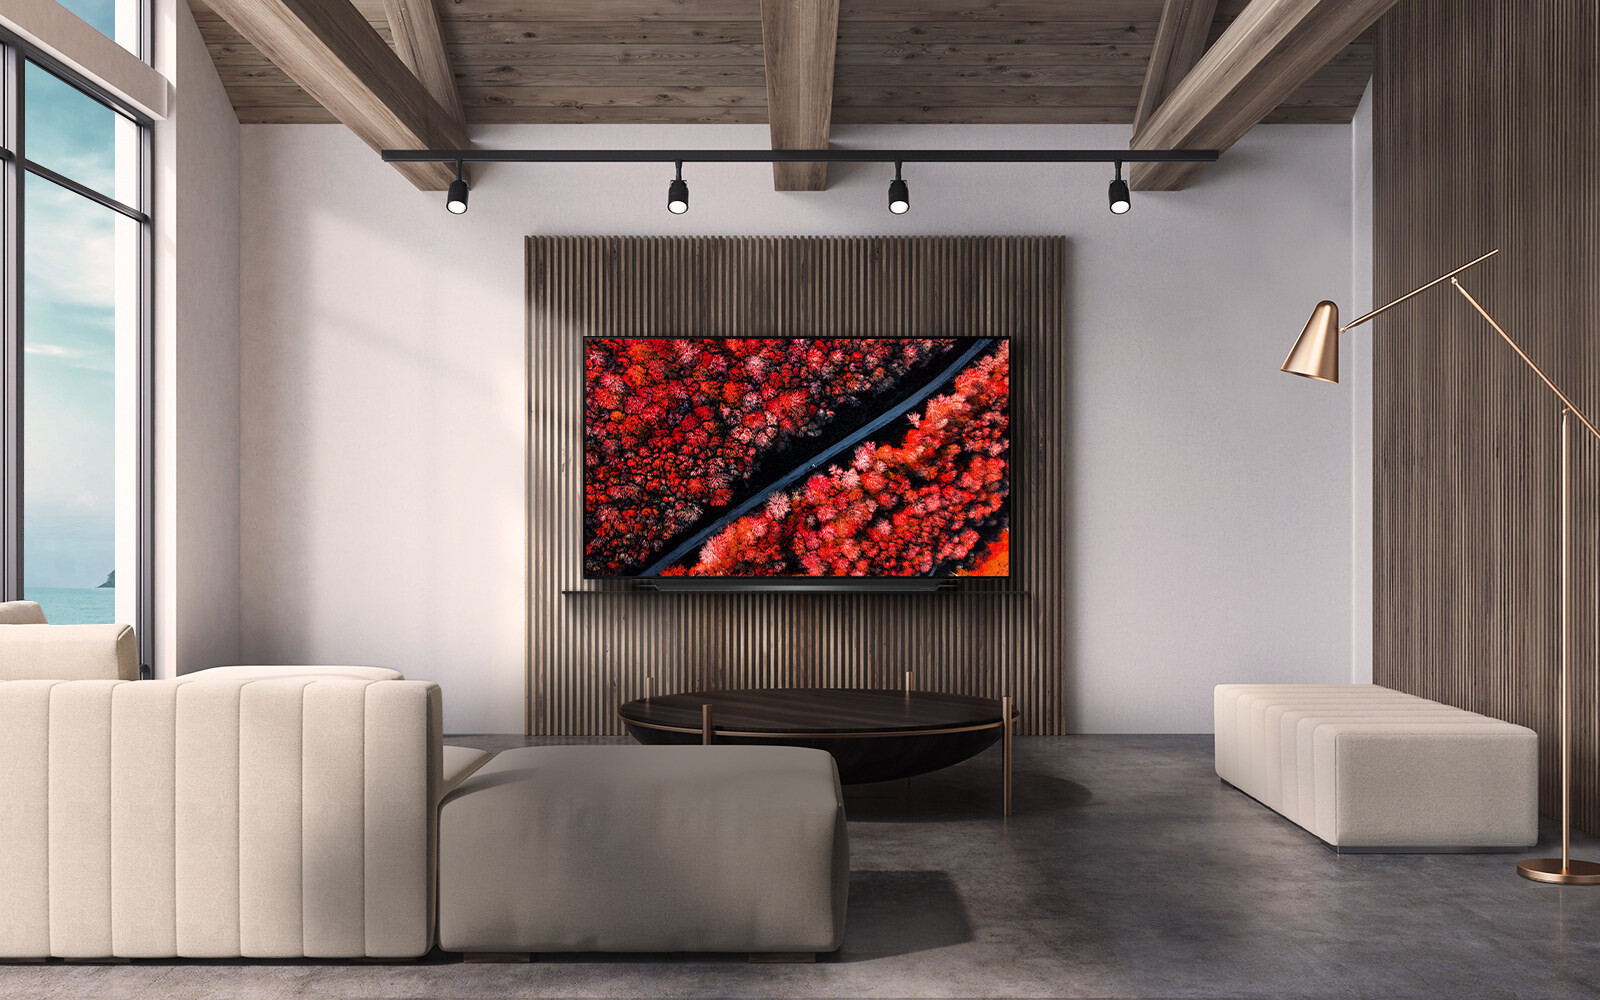 LG unveils its Black Friday sale on 2019 OLED TVs - 0 News